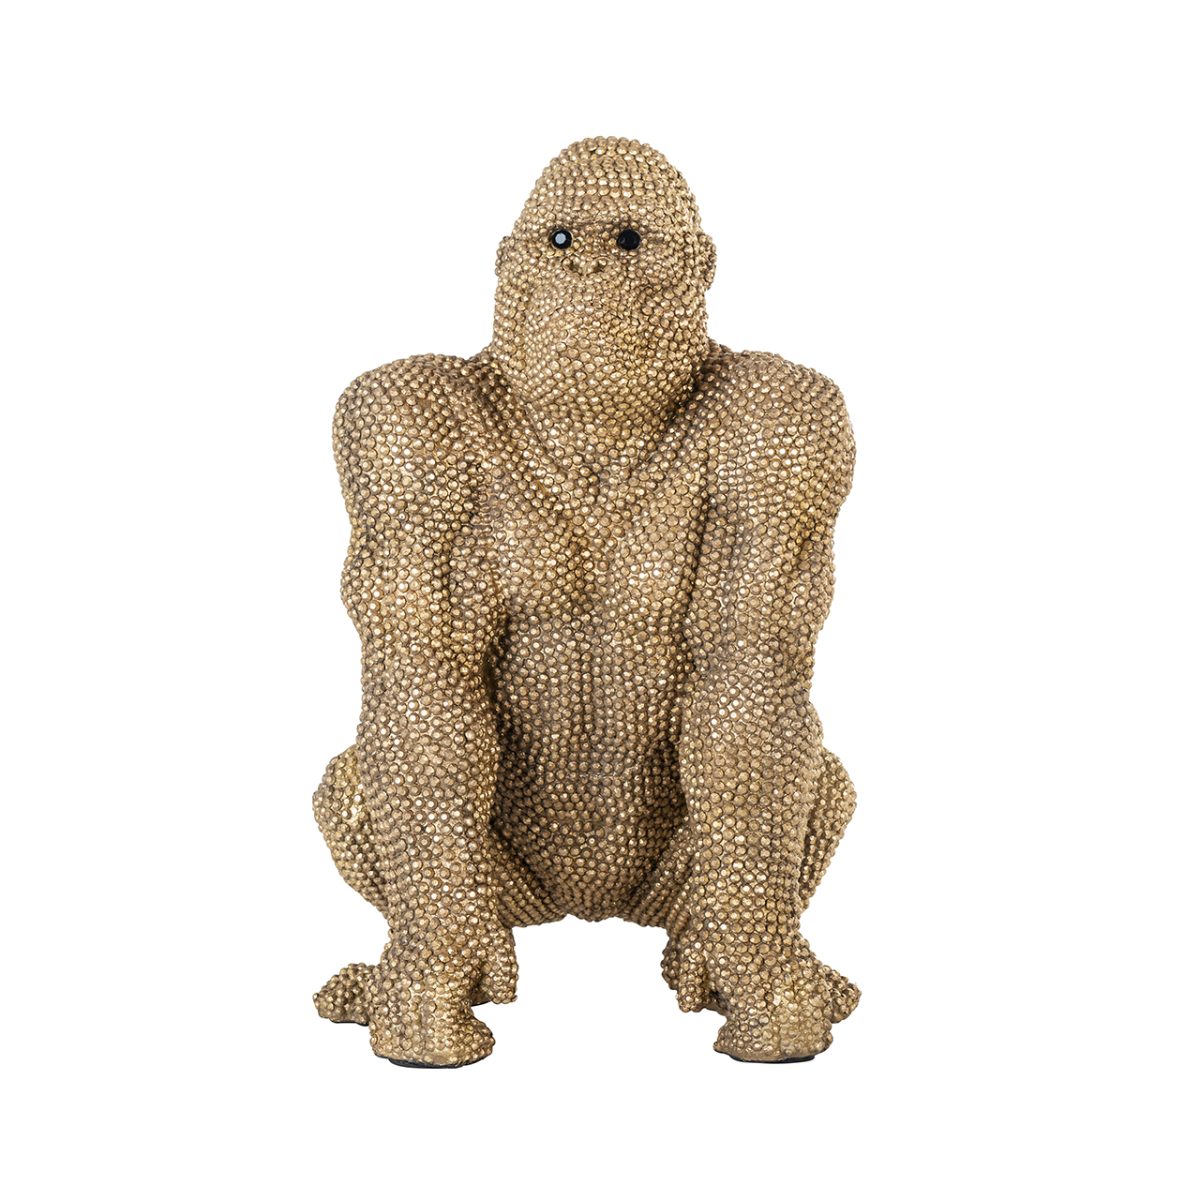 -AD-0007 - Deco object Gorilla goud klein (Gold)